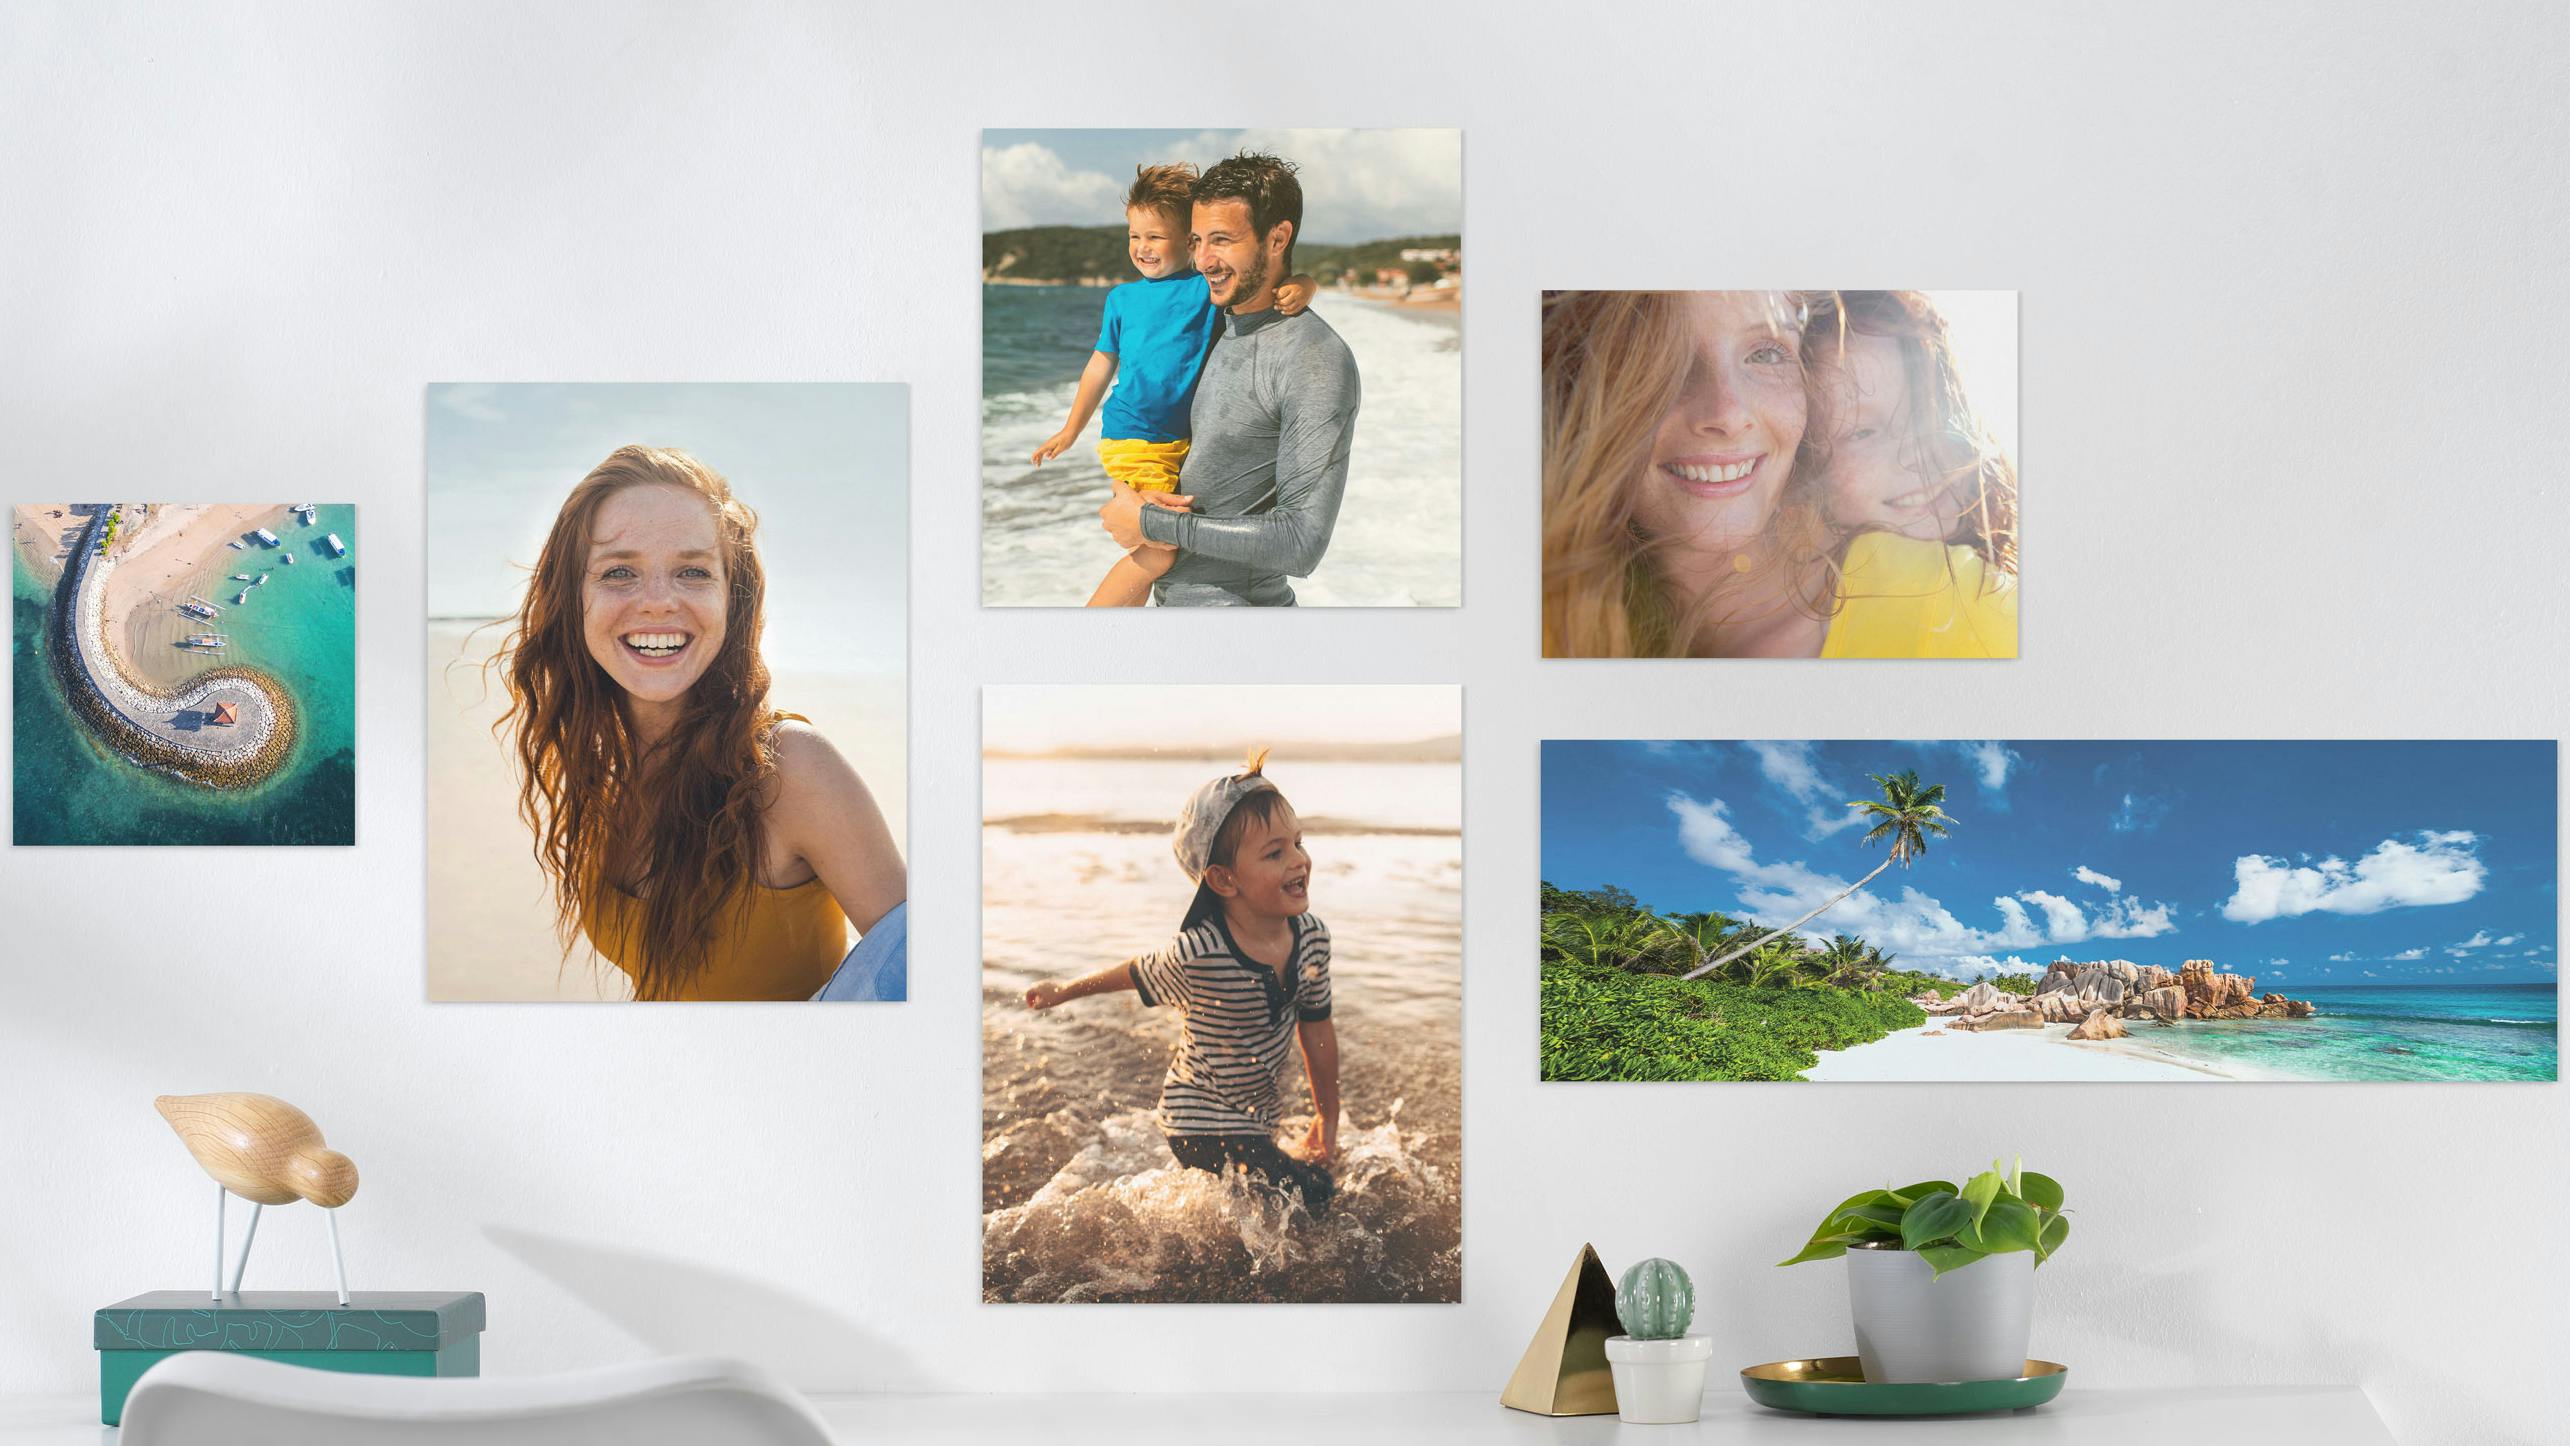 Fotoposter in verschiedenen Formaten mit sommerlichen Urlaubsmotiven